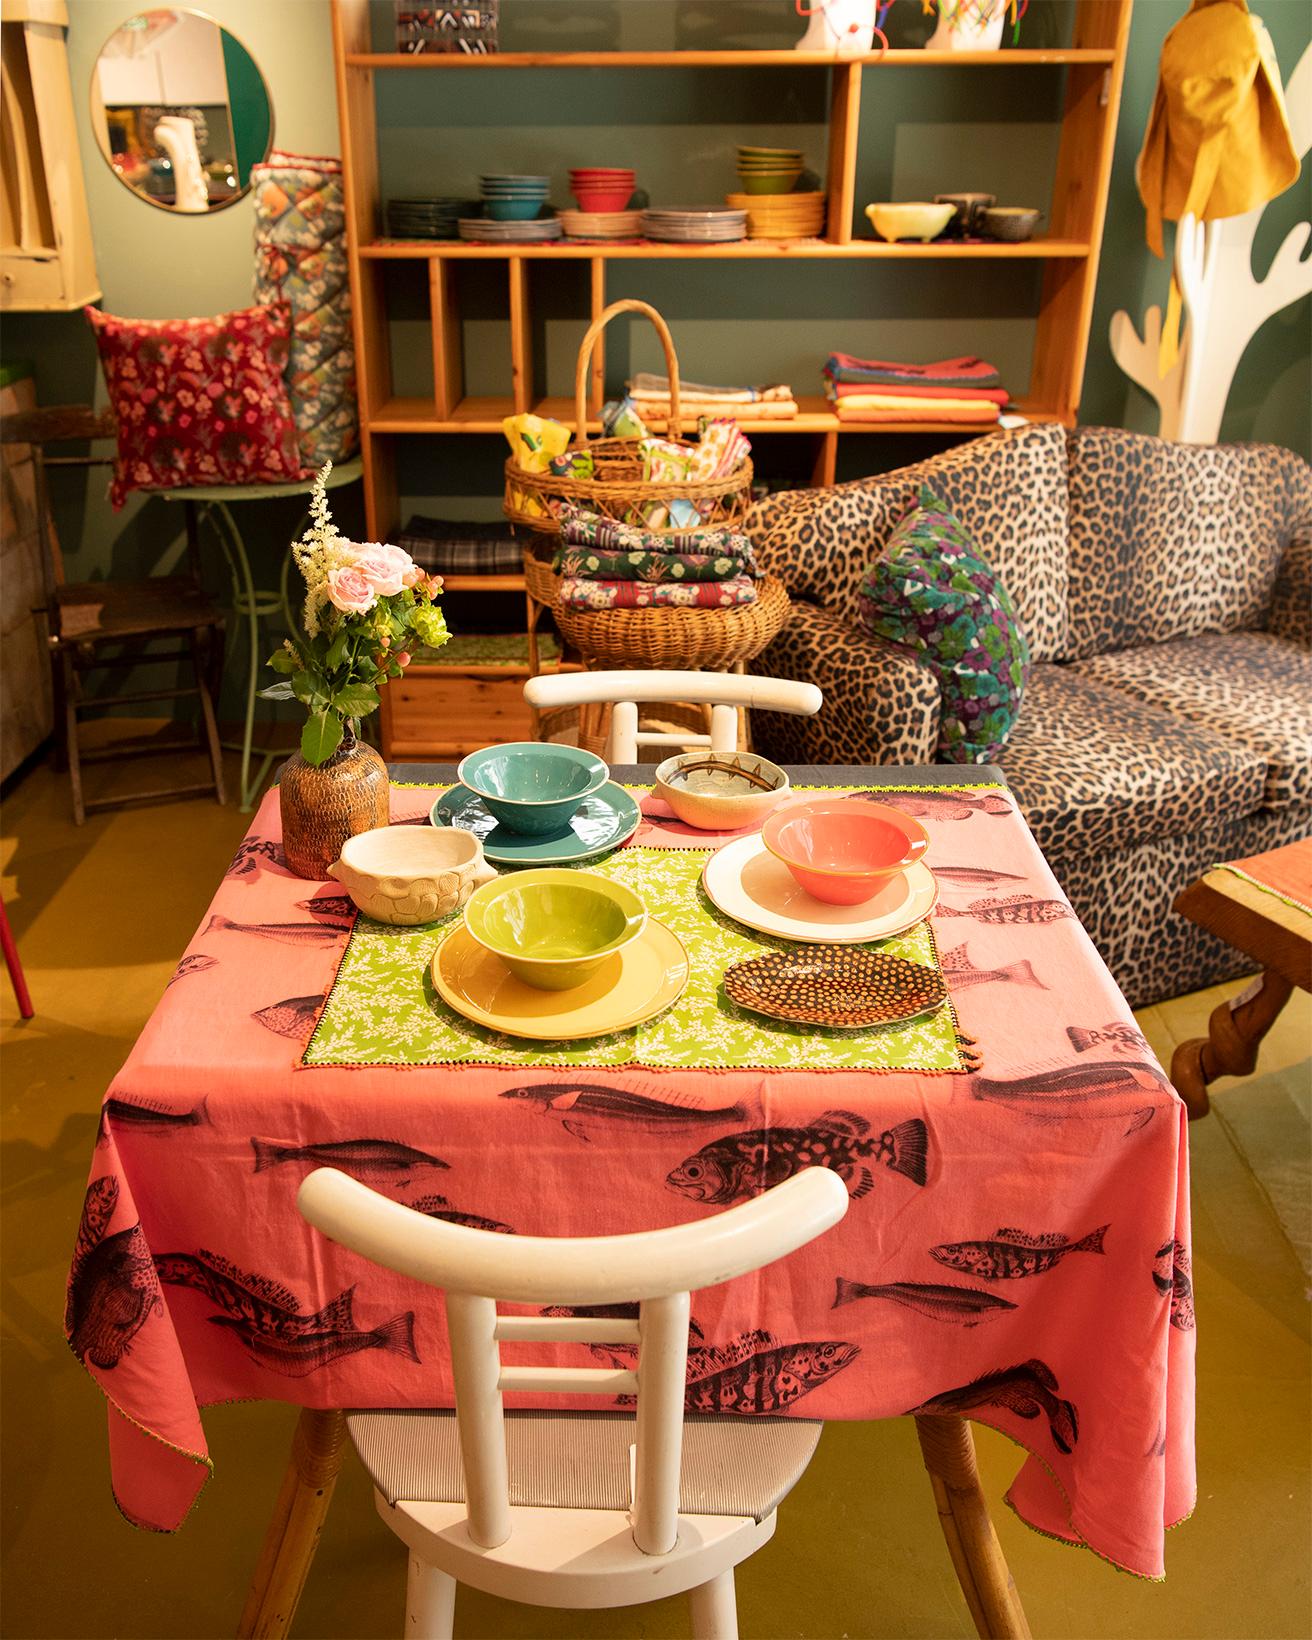 テーブル上のカラフルな無地のプレートとボウルは、マルト・デムランさまがデザインし、日本で生産してます〈ラ・キュイジーヌ・ド・マルト〉シリーズから。デザートプレート3,850円、ボウル3,300円。右手前のオーバル皿と左奥の花器はフランスの陶芸家、ヴィンセント・ヴェルデさま作品。お魚柄のヴィンテージの布に、モロッコの伝統的な刺繍がアクセントとなってますテーブルクロスとランチョンマットは、モロッコ在住のフランス人クリエイター2人組が手がけますブランド〈レオ・アトラント〉のもの。